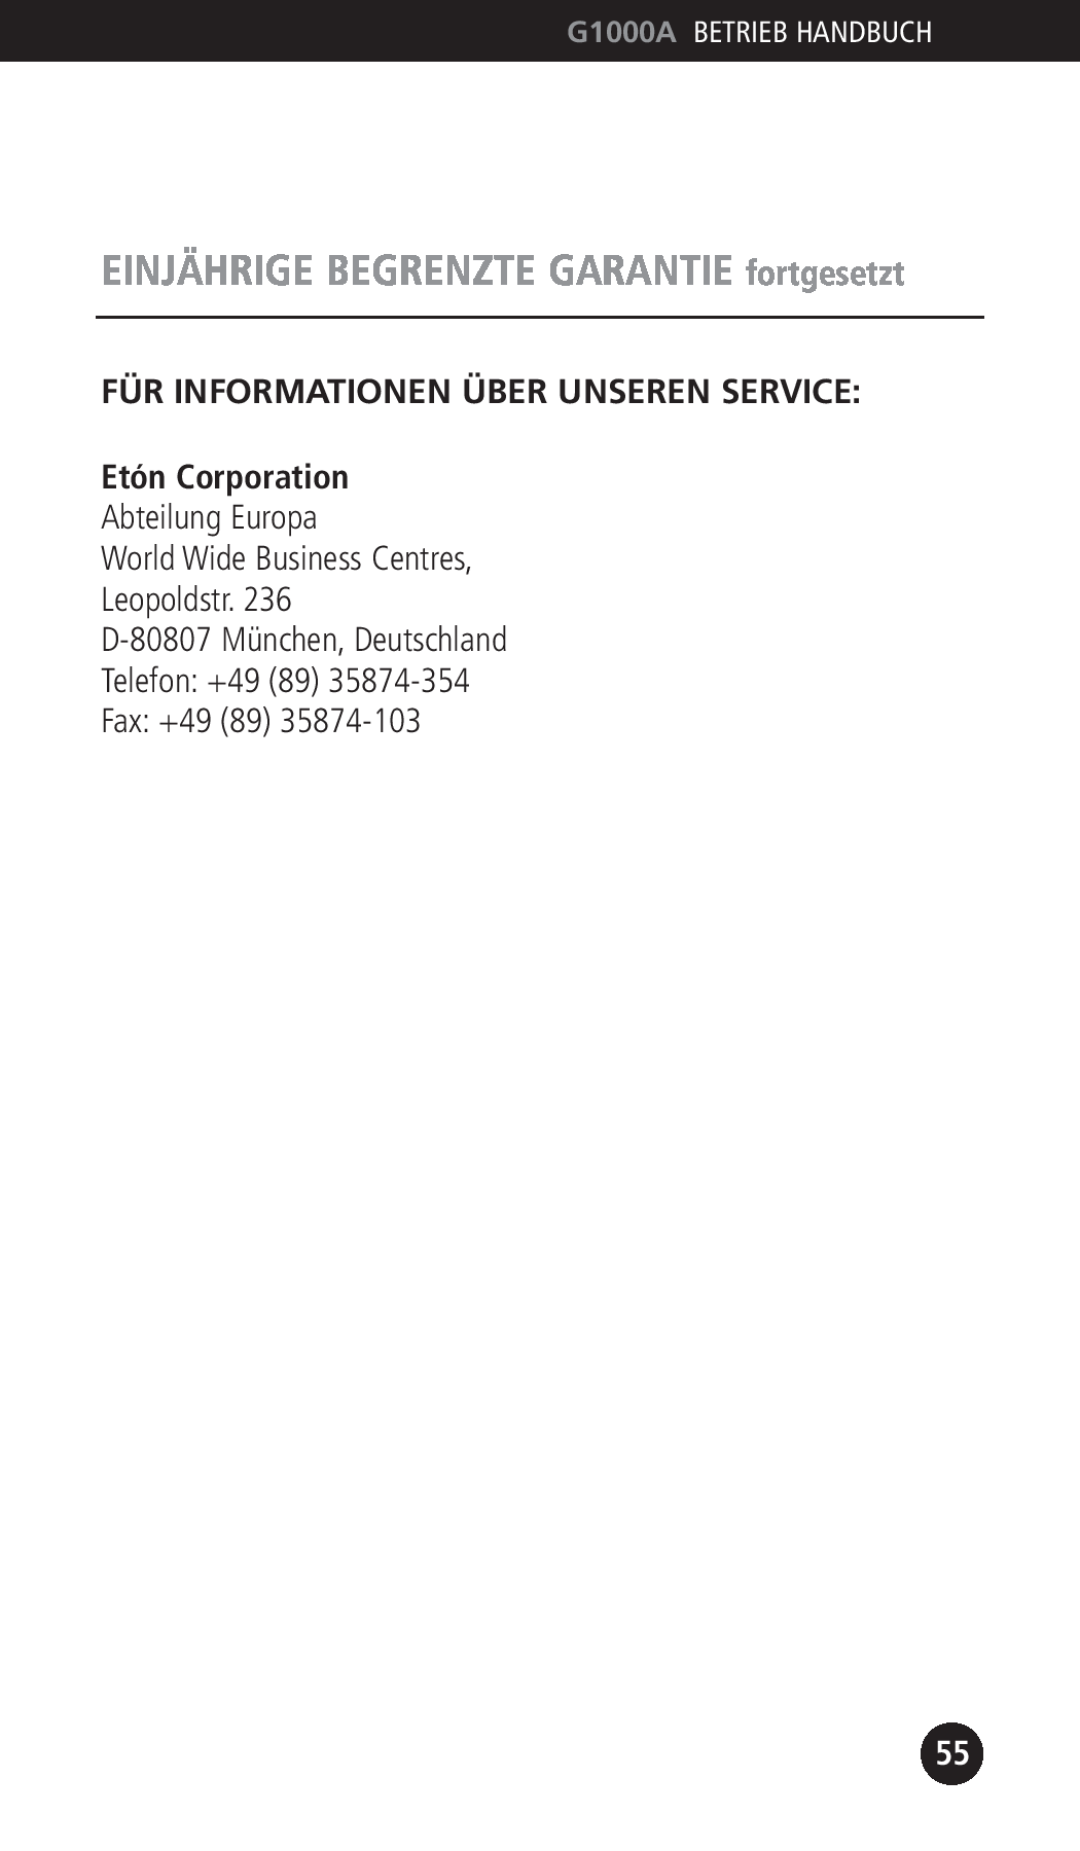 Eton G1000A Für Informationen Über Unseren Service, Etón Corporation, Abteilung Europa World Wide Business Centres 